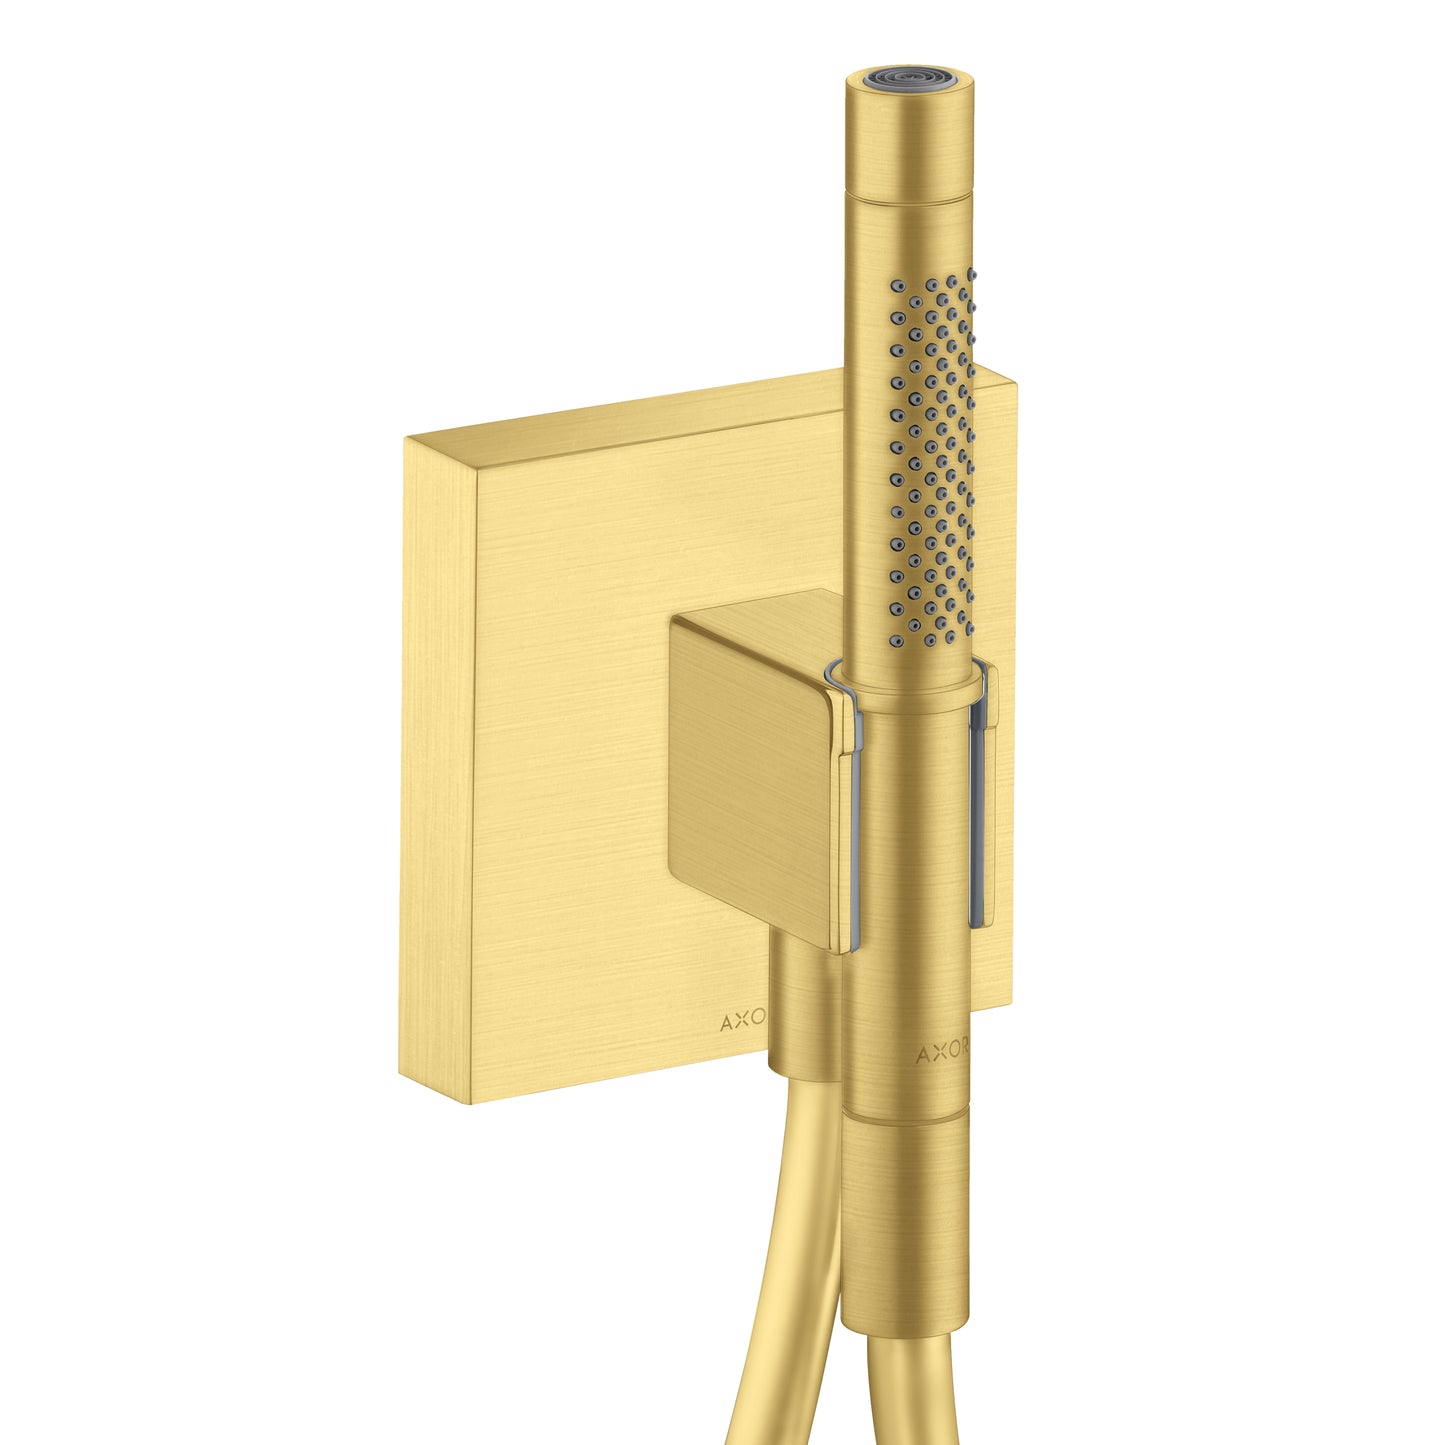 AXOR 12627251 Brushed Gold Optic ShowerSolutions Modern Handshower Holder 1.75 GPM